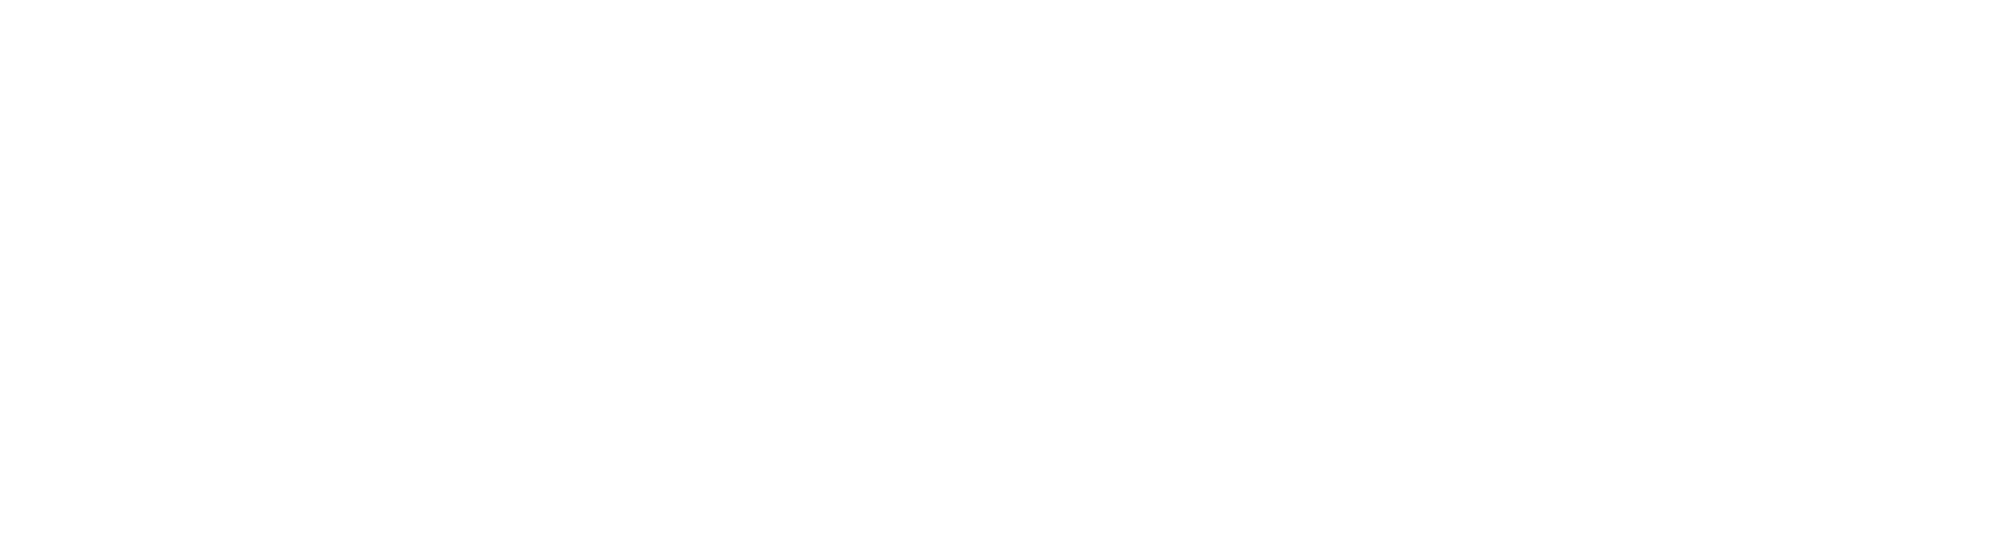 UQモバイルeSIM「超」入門ガイド